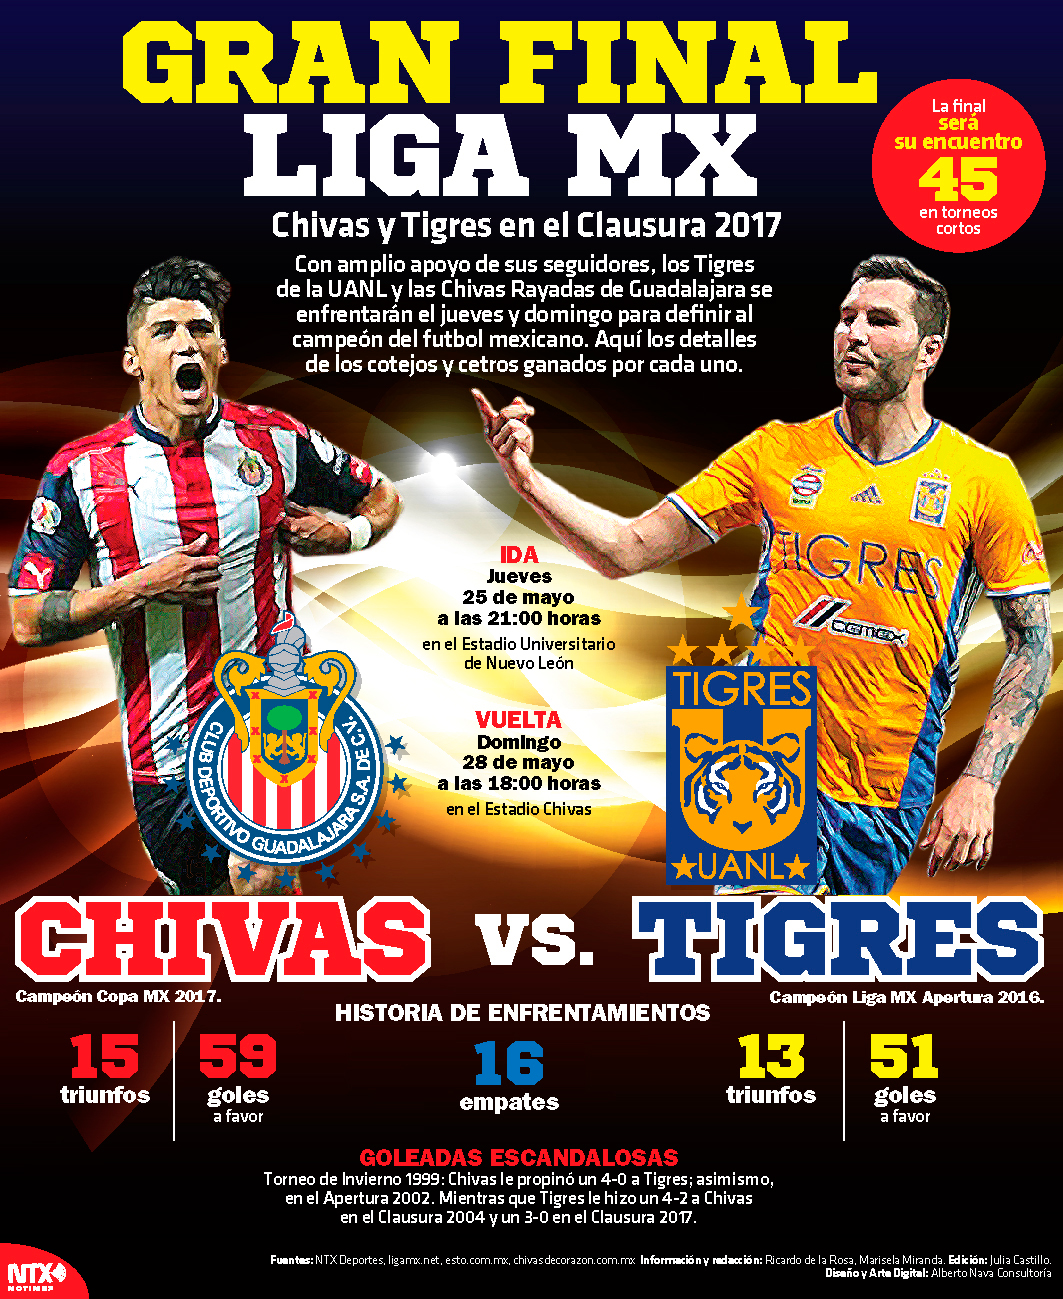 Gran final, Liga MX, Chivas y Tigres en el Clausura 2017